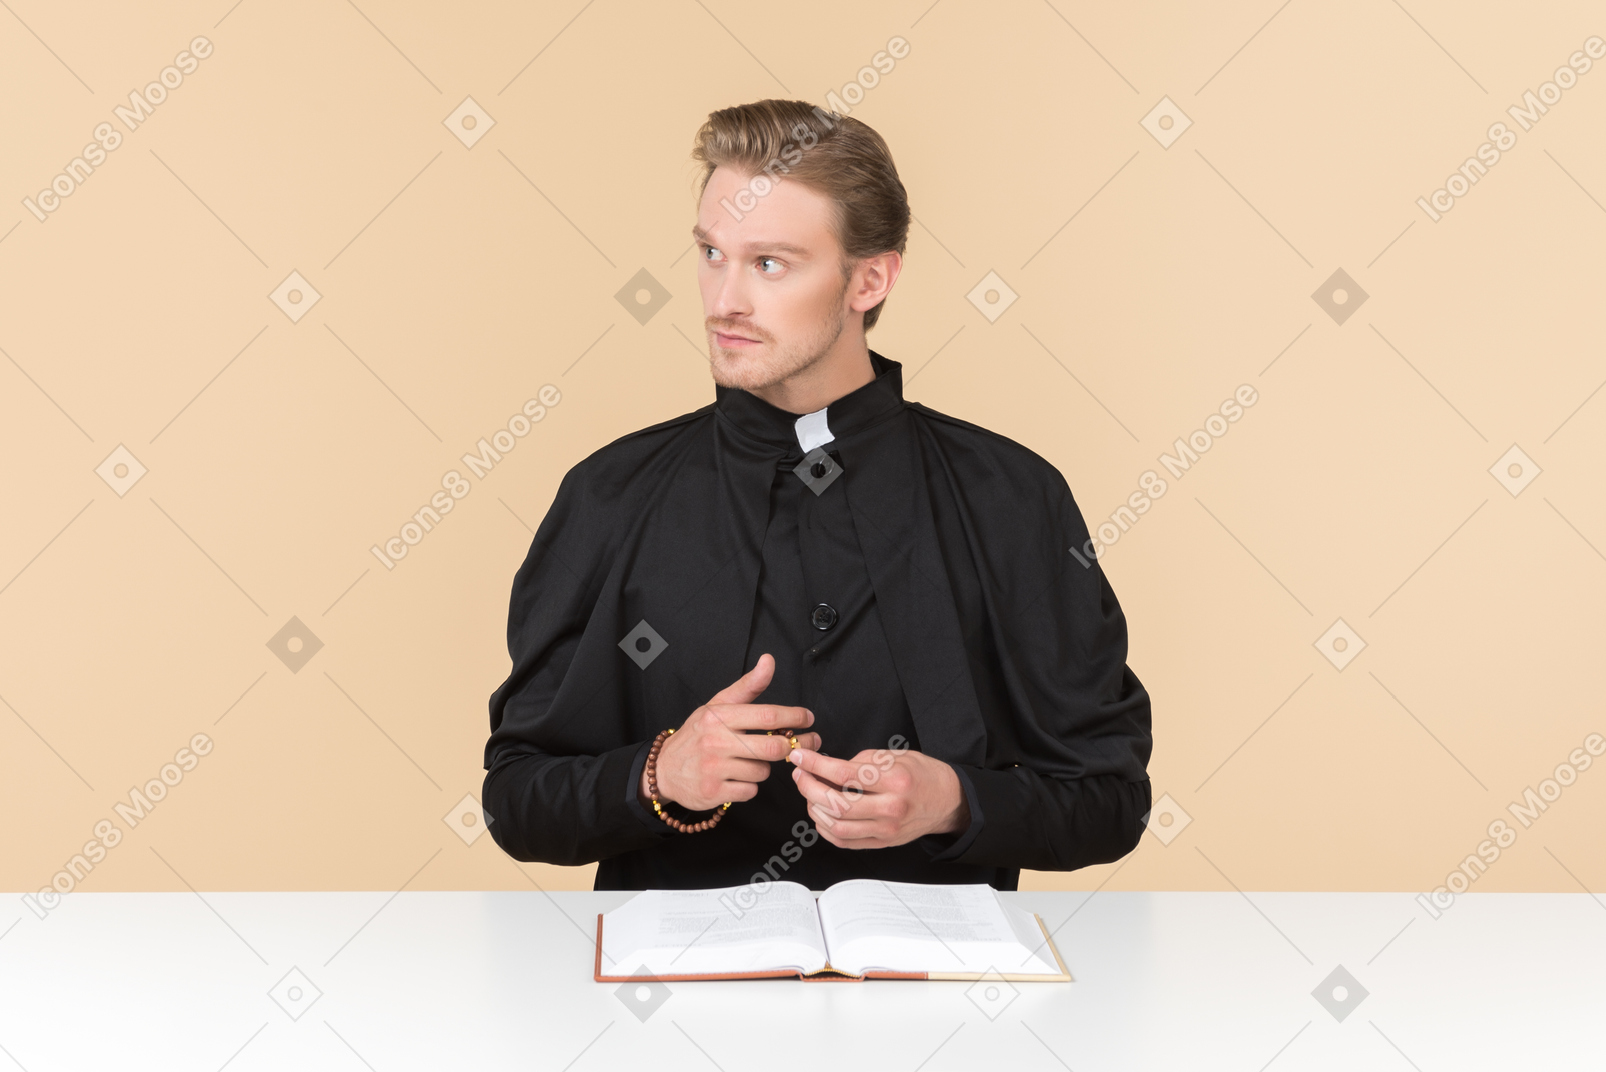 오픈 성경 앞에 앉아 생각에 잠겨있는 가톨릭 신부